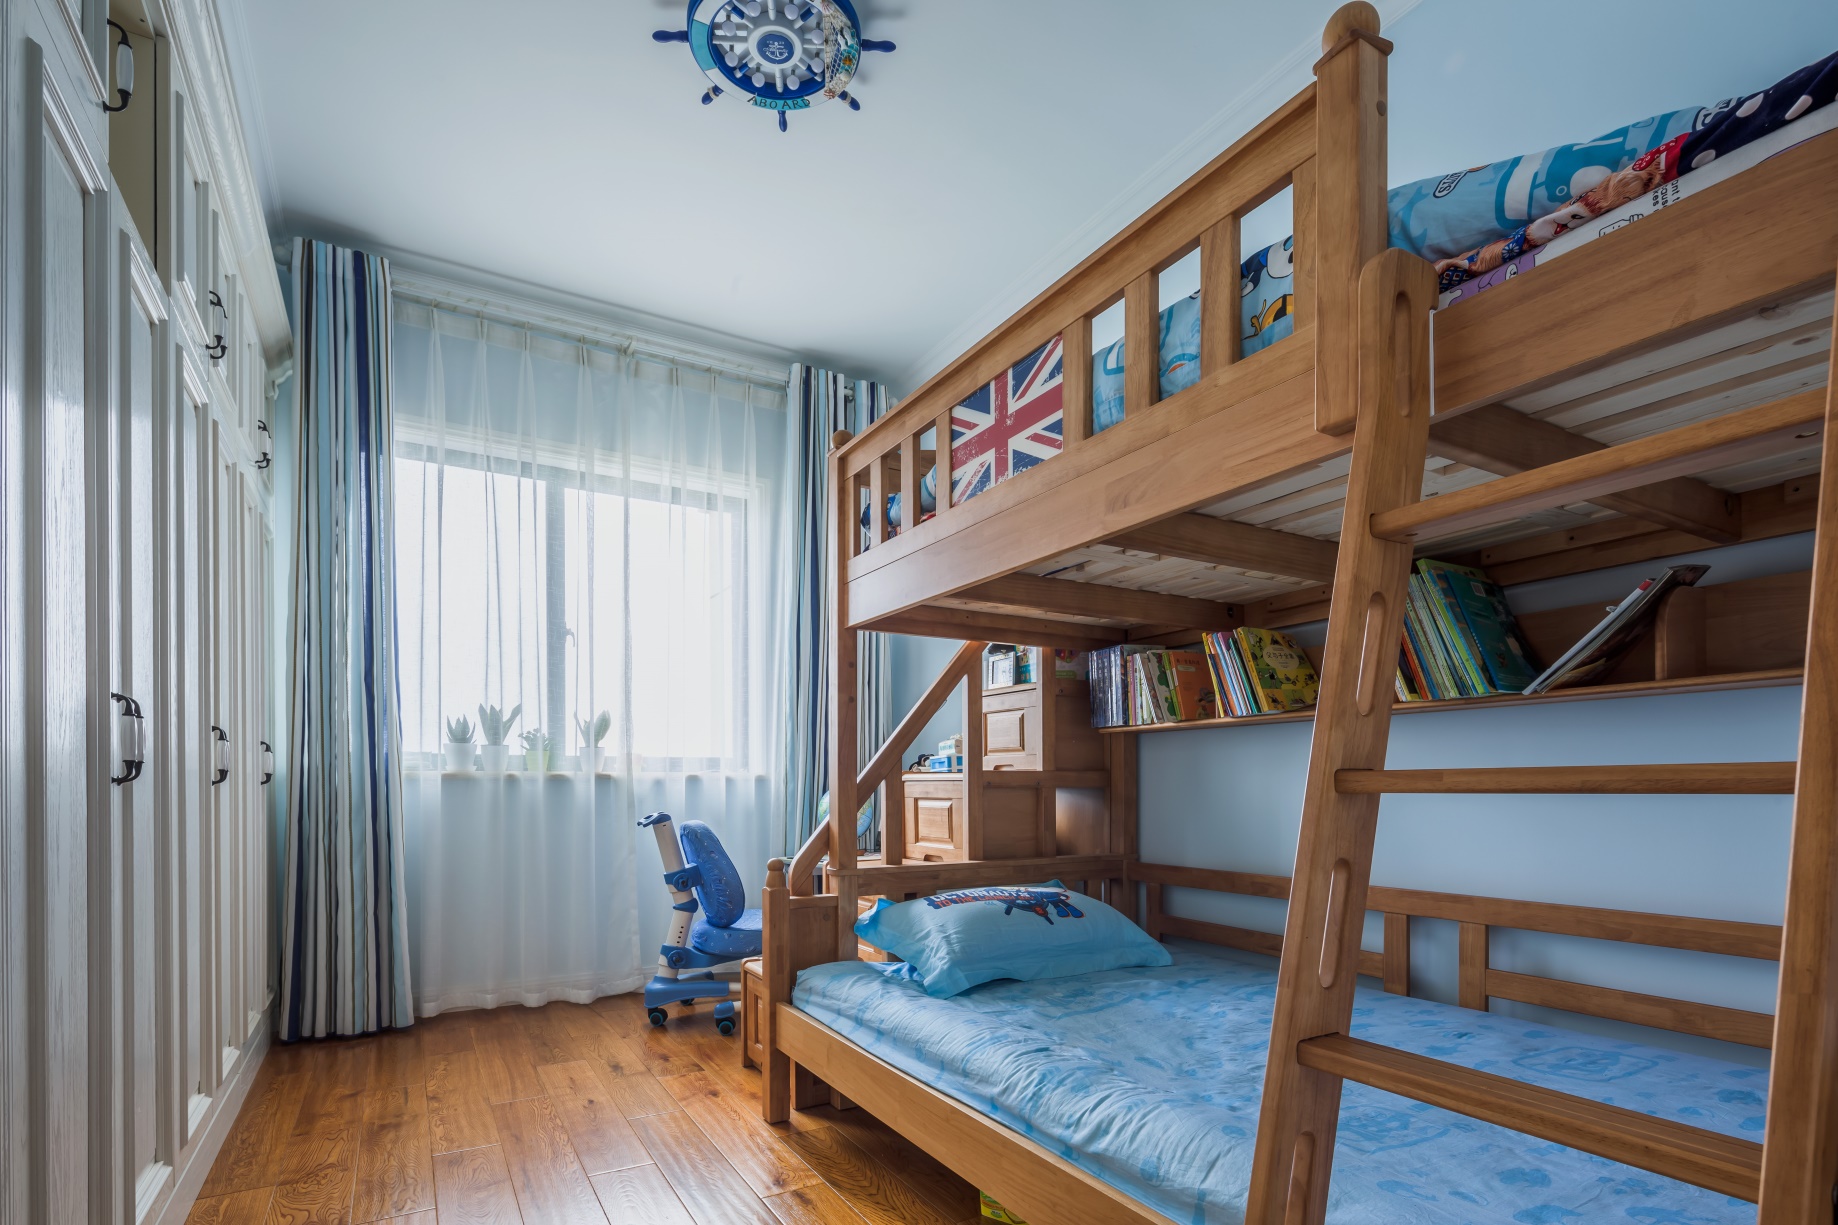 上下床节省空间，为娱乐区域留出空间，面墙衣柜设计增添儿童房收纳功能。